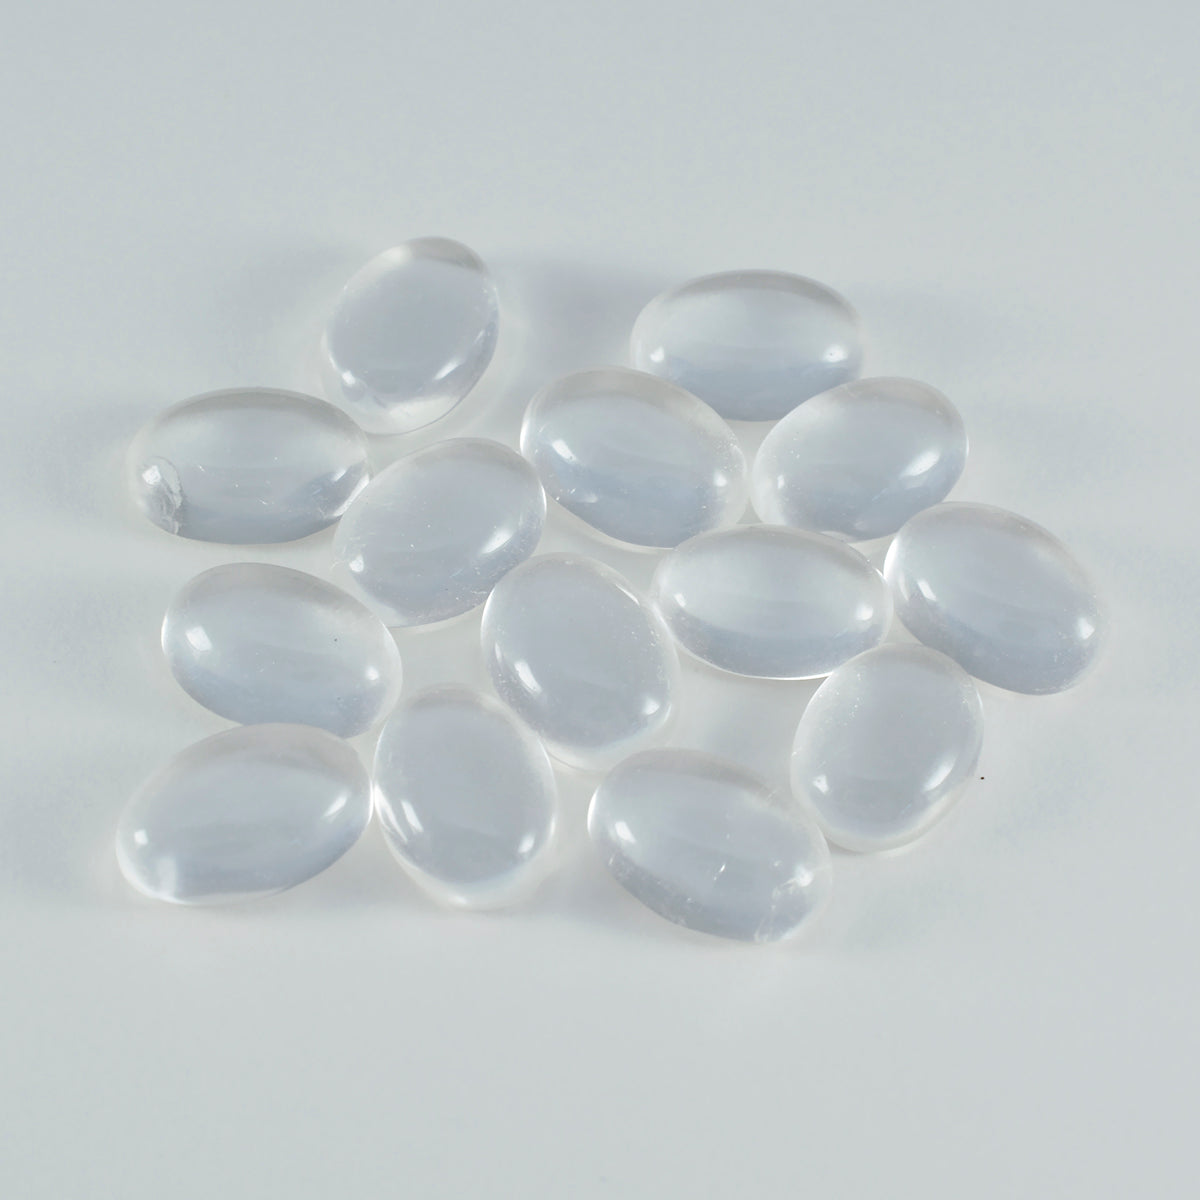 Riyogems 1 cabujón de cuarzo de cristal blanco de 10 x 12 mm, forma ovalada, piedra preciosa de calidad fantástica